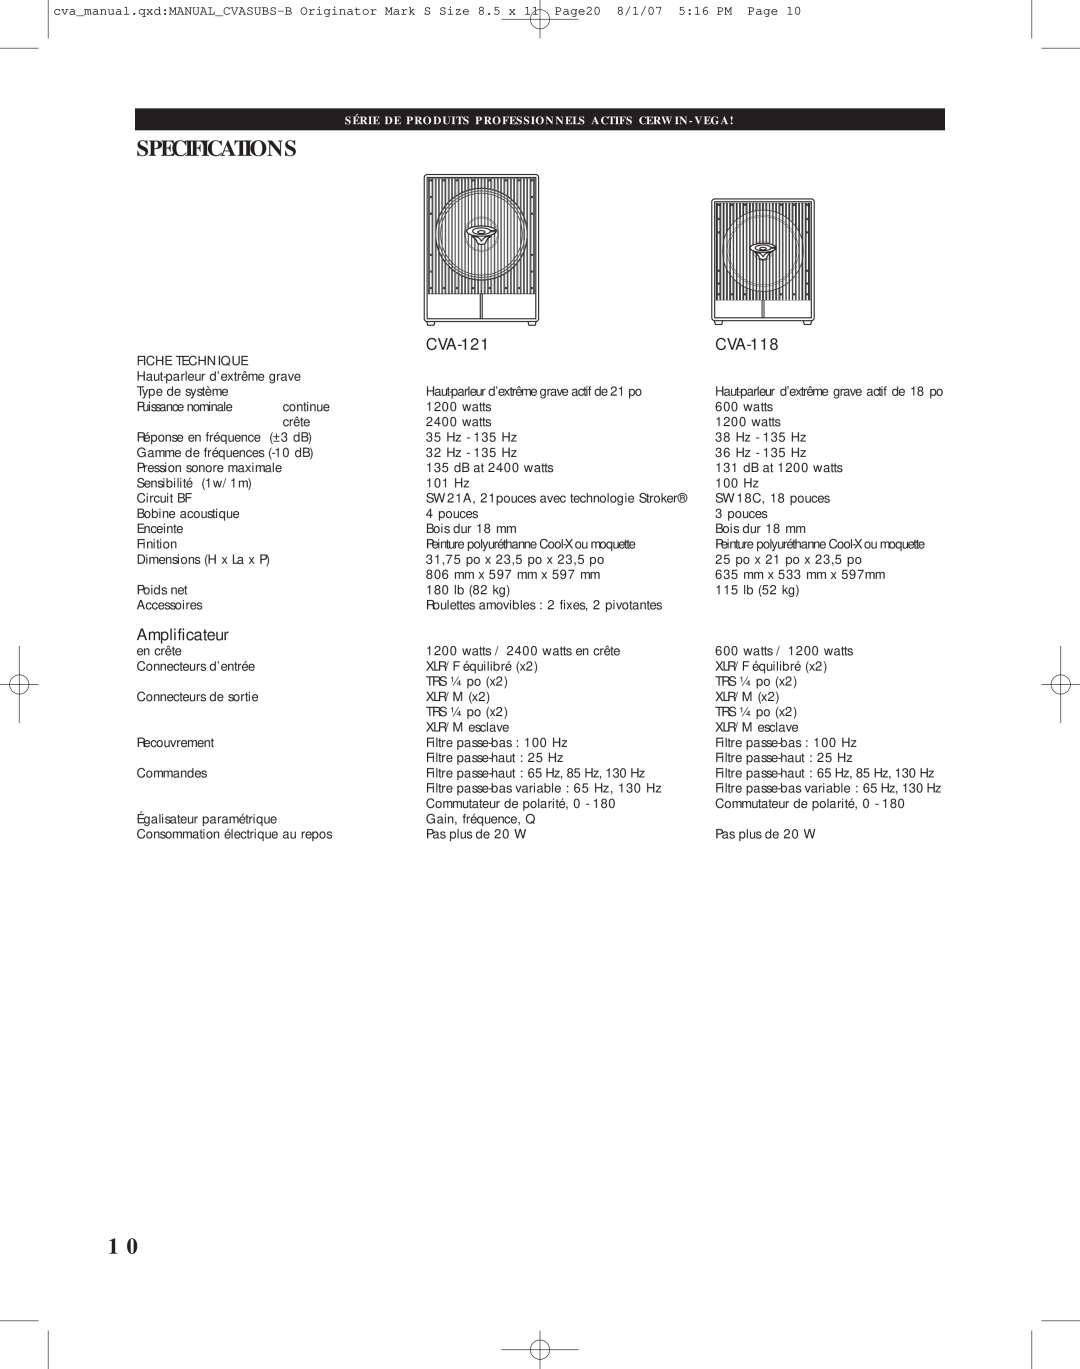 Cerwin-Vega CVA-118 manual Specifications, CVA-121, Amplificateur 